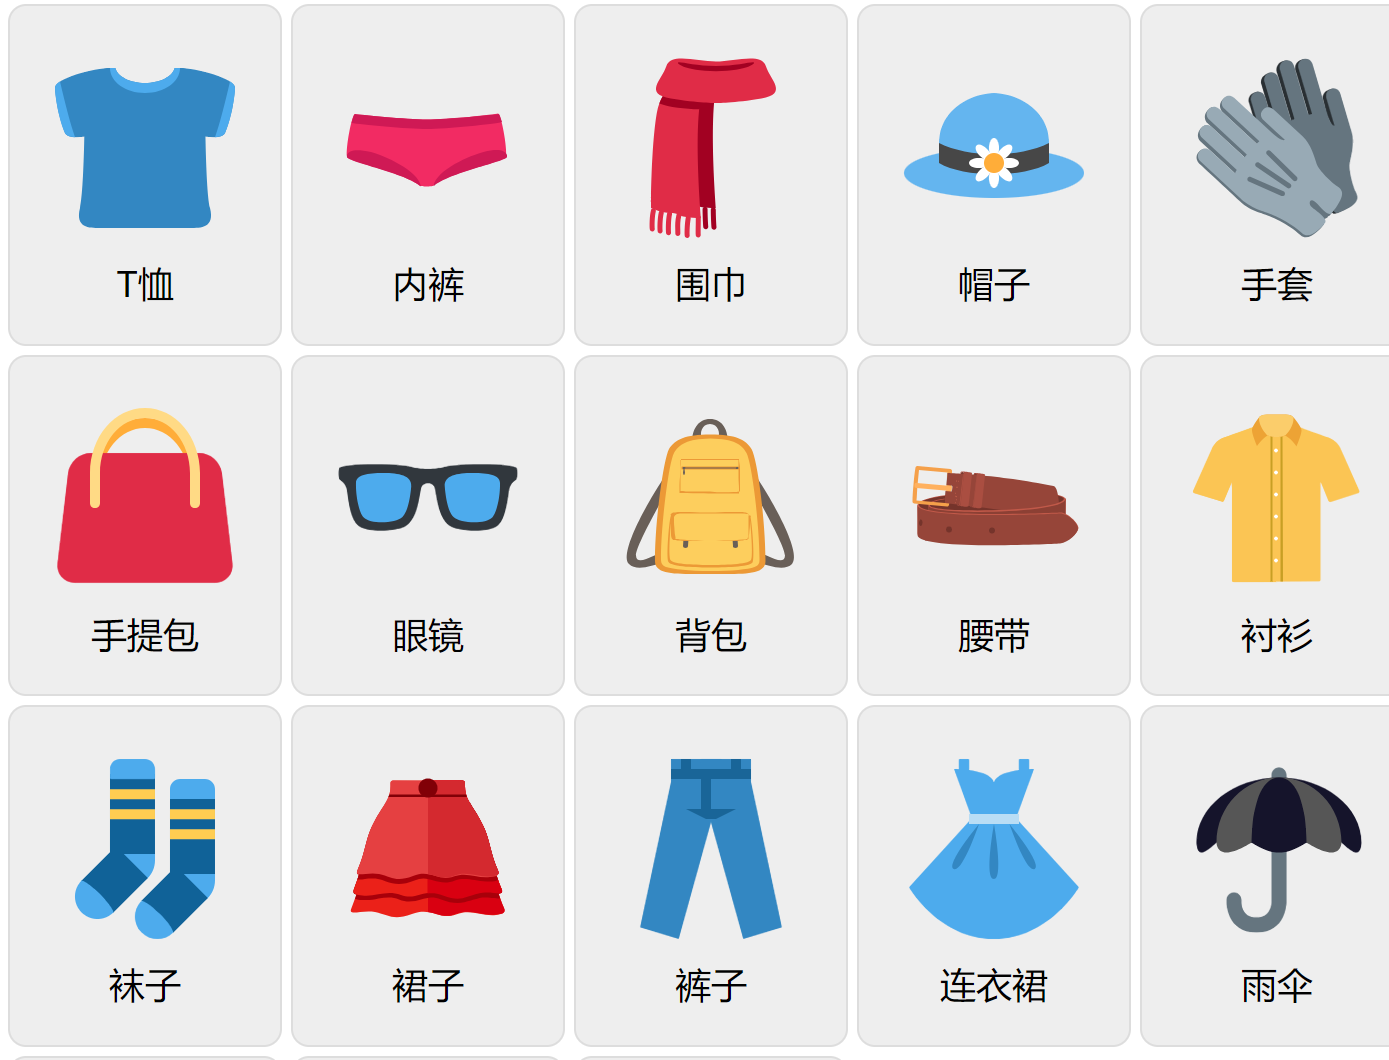 Kläder på kinesiska (mandarin)